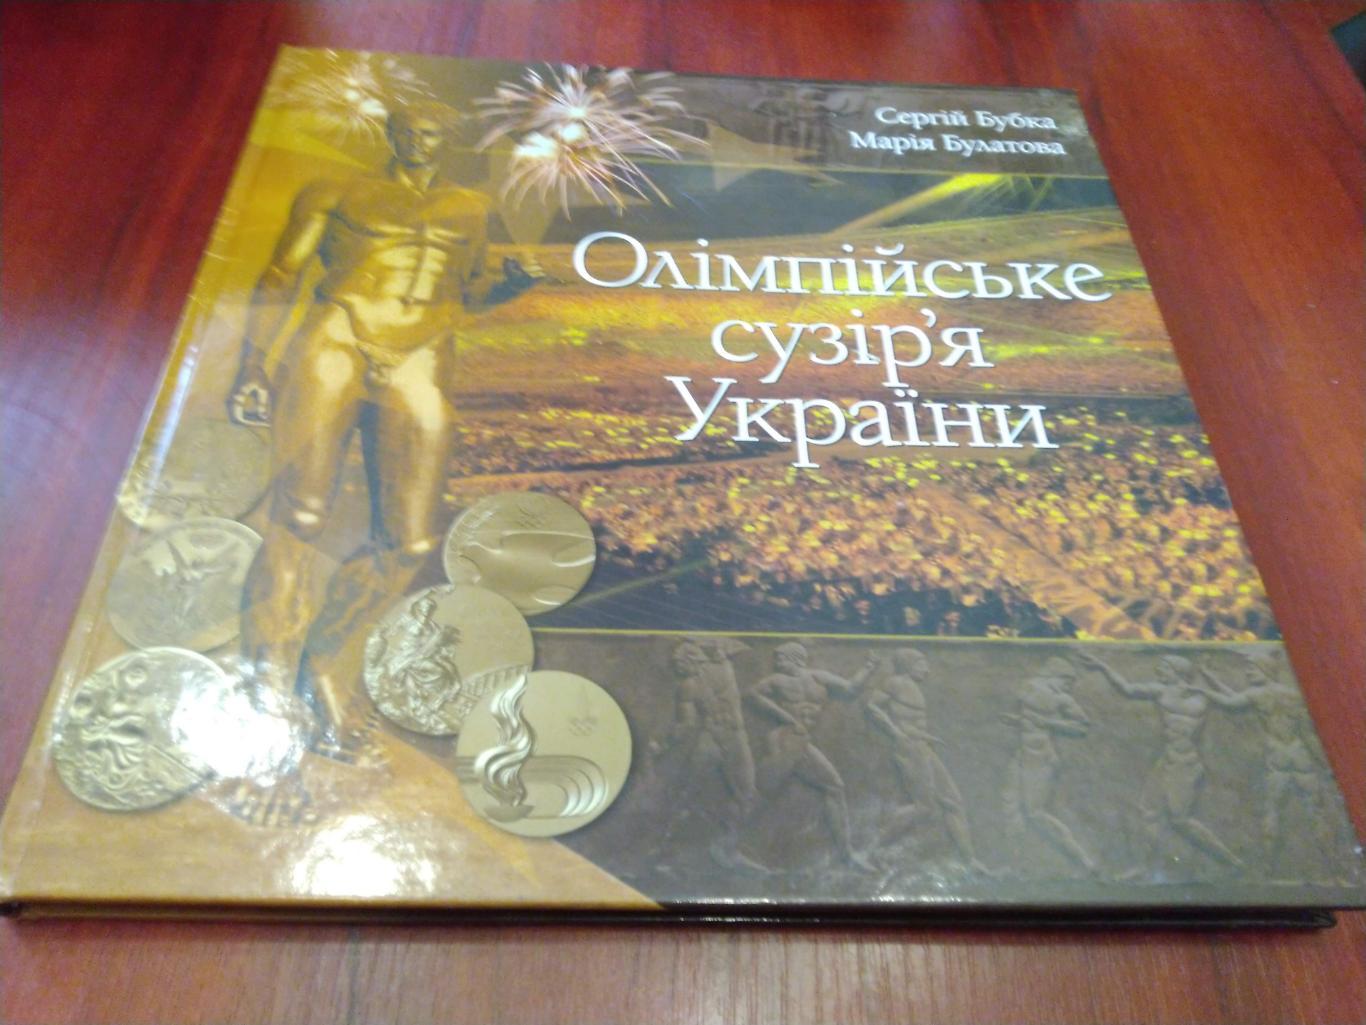 С. Бубка, М. Булатова,Олимпийское созвездие Украины,2010 на украинском языке 1